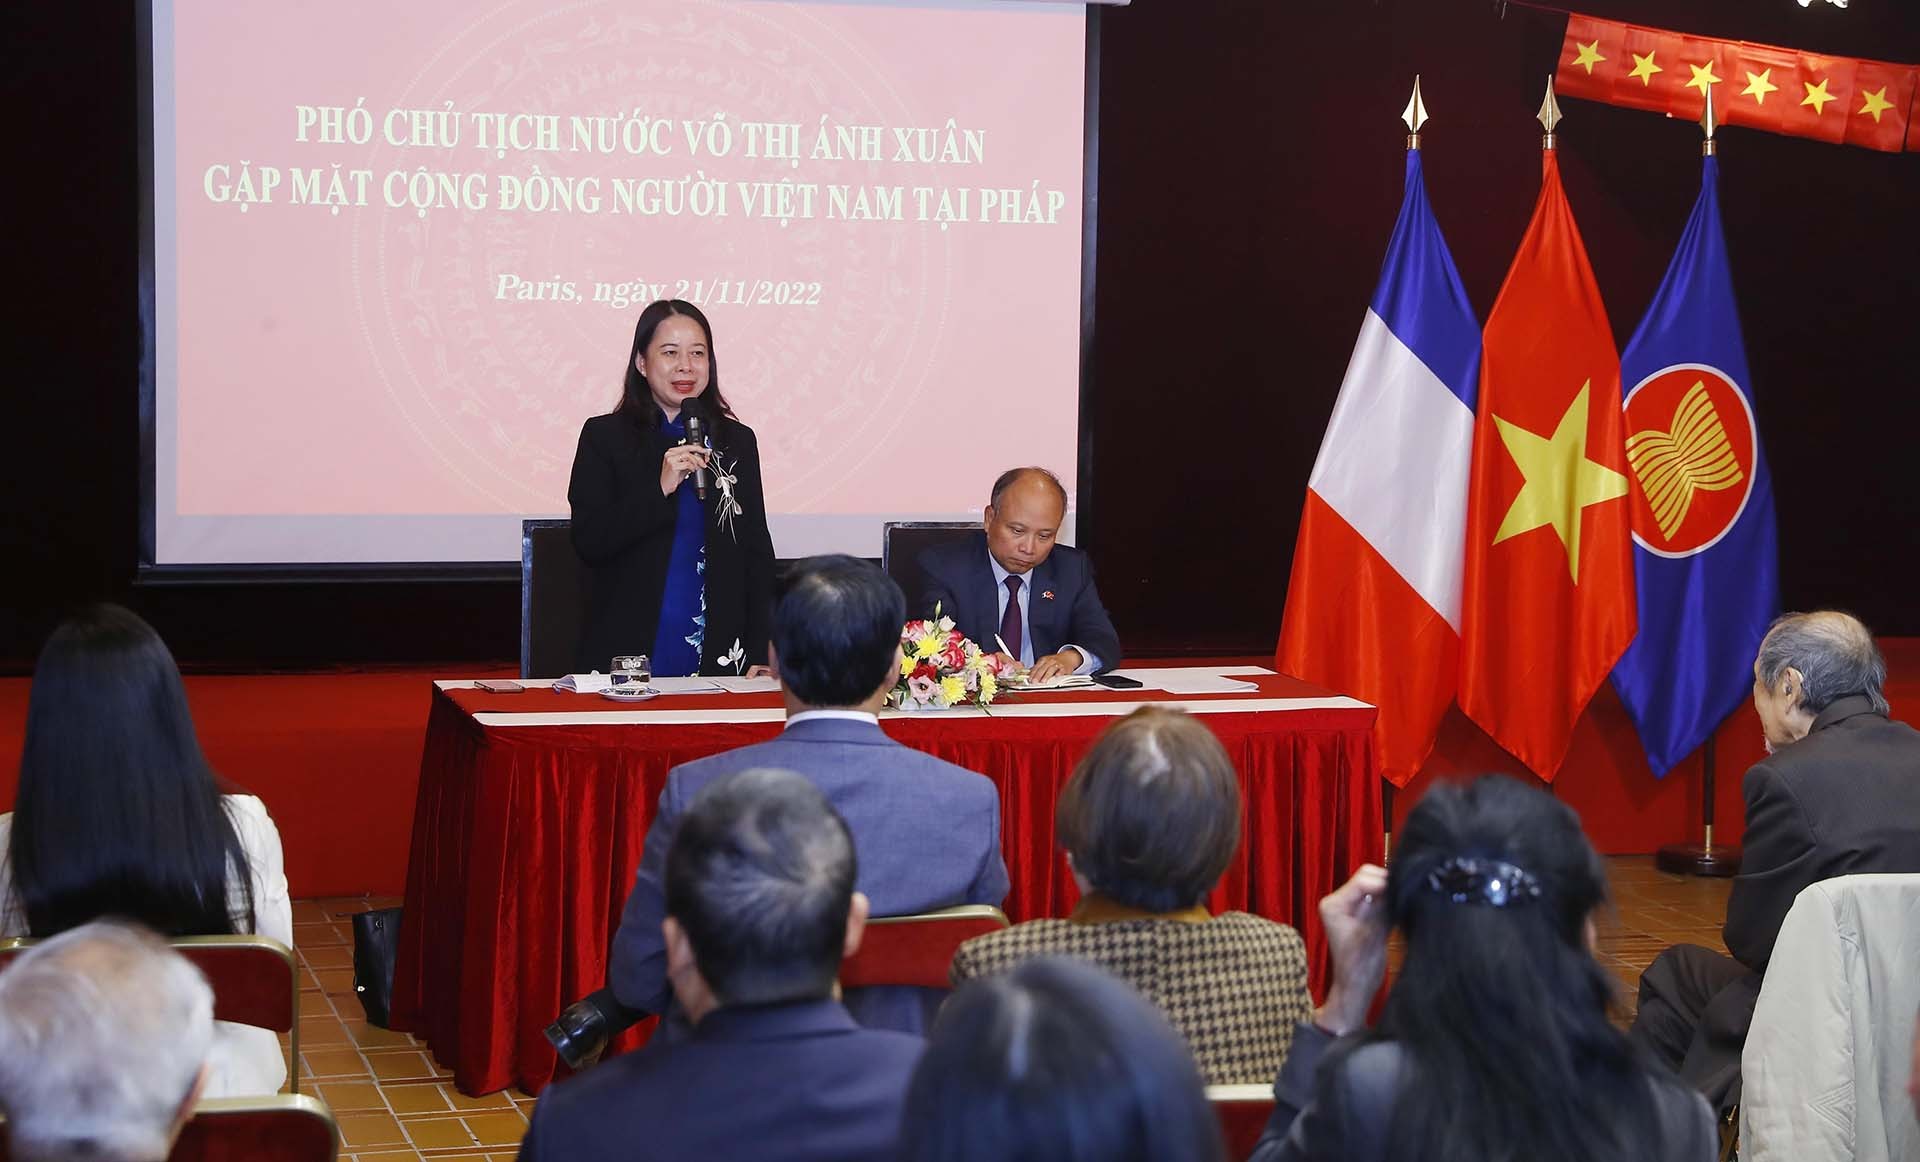 Phó Chủ tịch nước Võ Thị Ánh Xuân nói chuyện với đại diện cộng đồng người Việt Nam tại Pháp. (Nguồn: TTXVN)